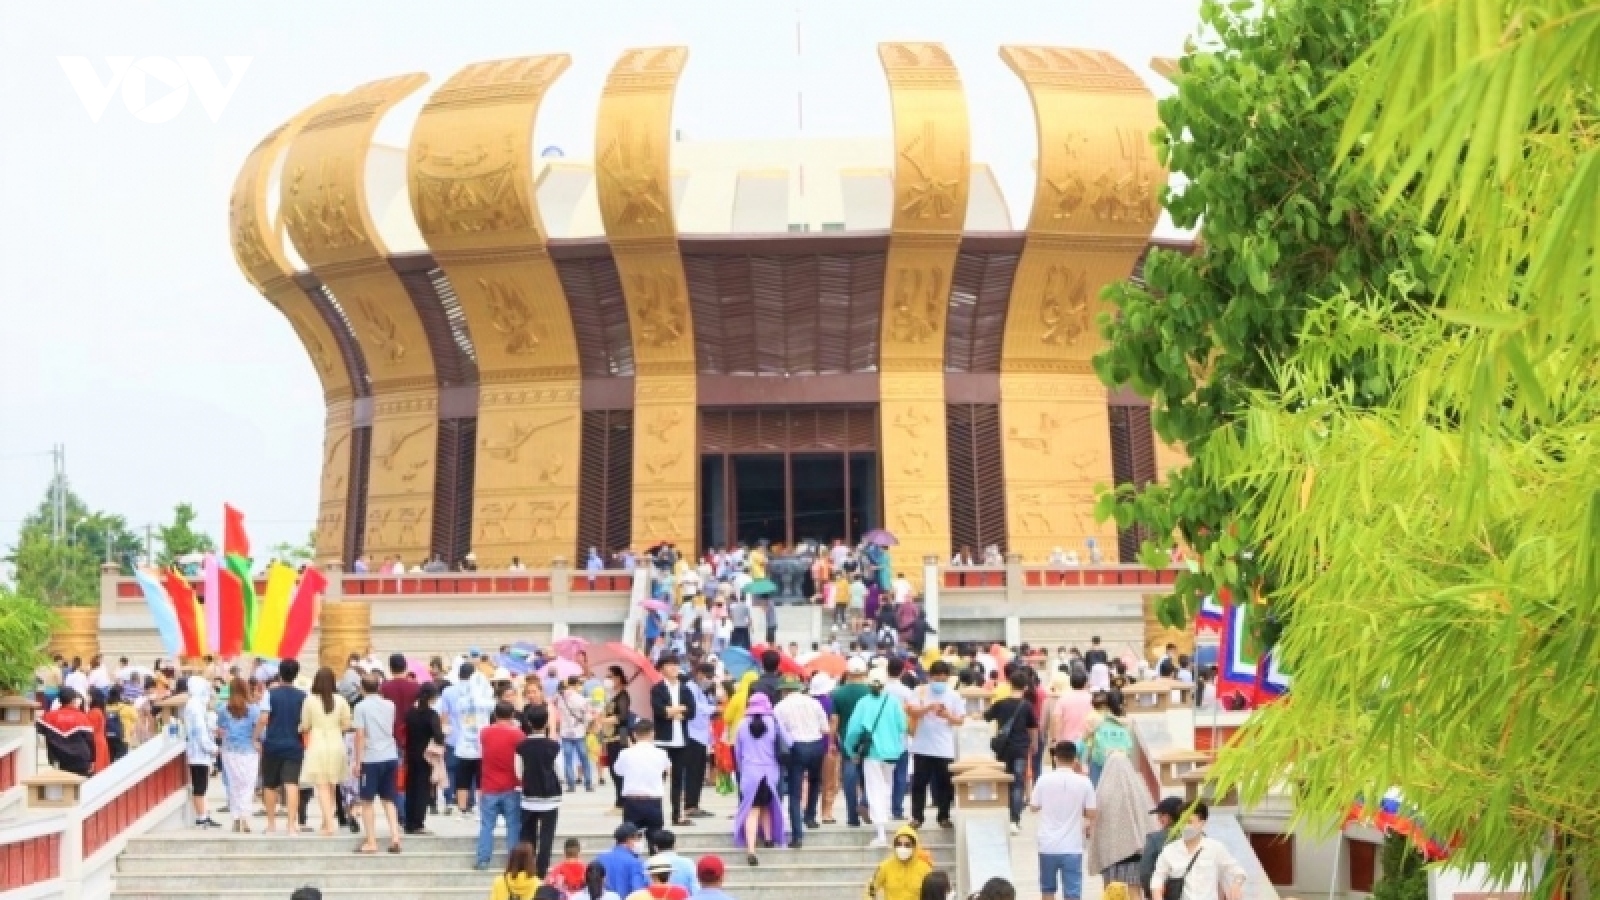 Đền thờ Vua Hùng tại Cần Thơ đón 72.000 lượt khách trong dịp Giỗ Tổ Hùng Vương